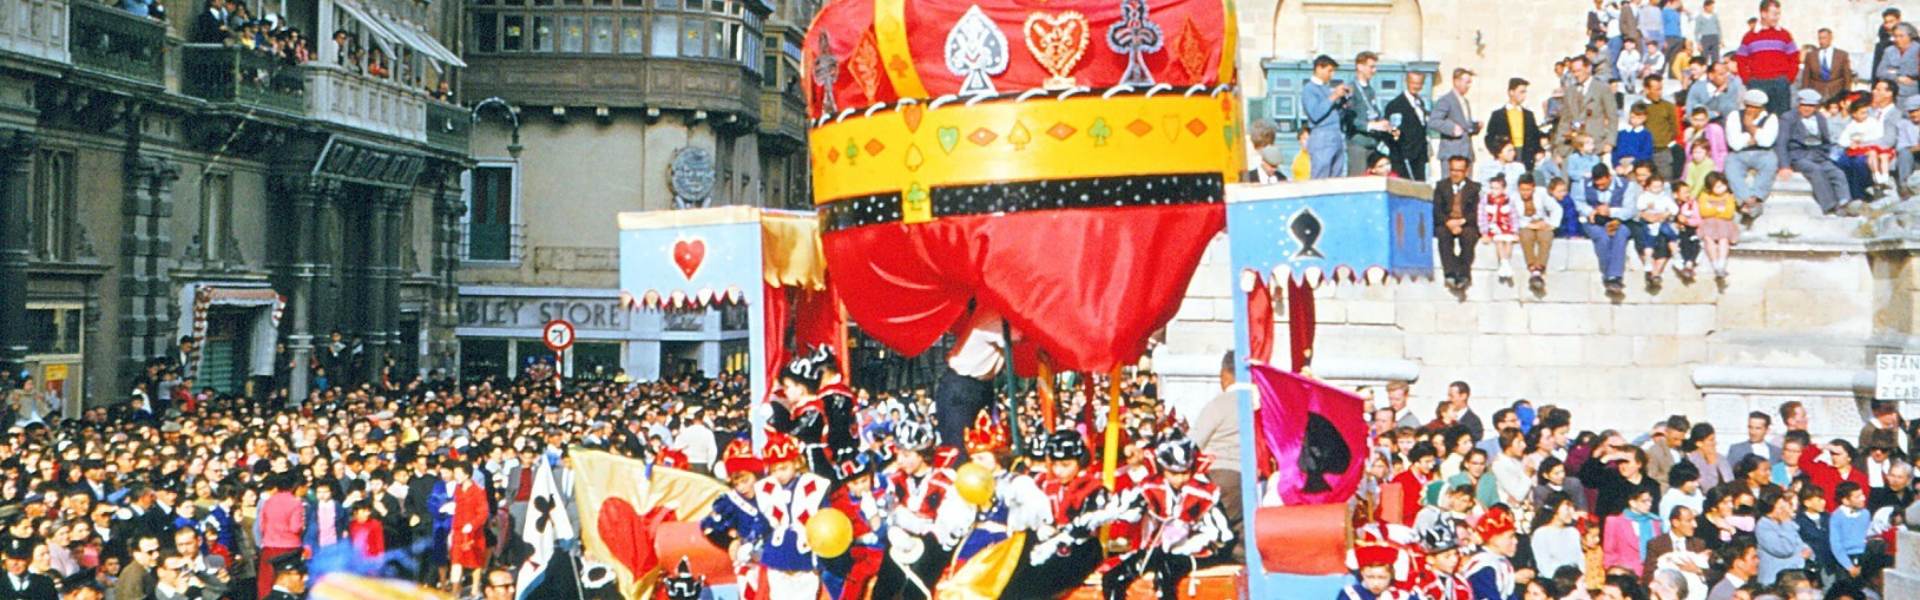 carnival in malta 1960